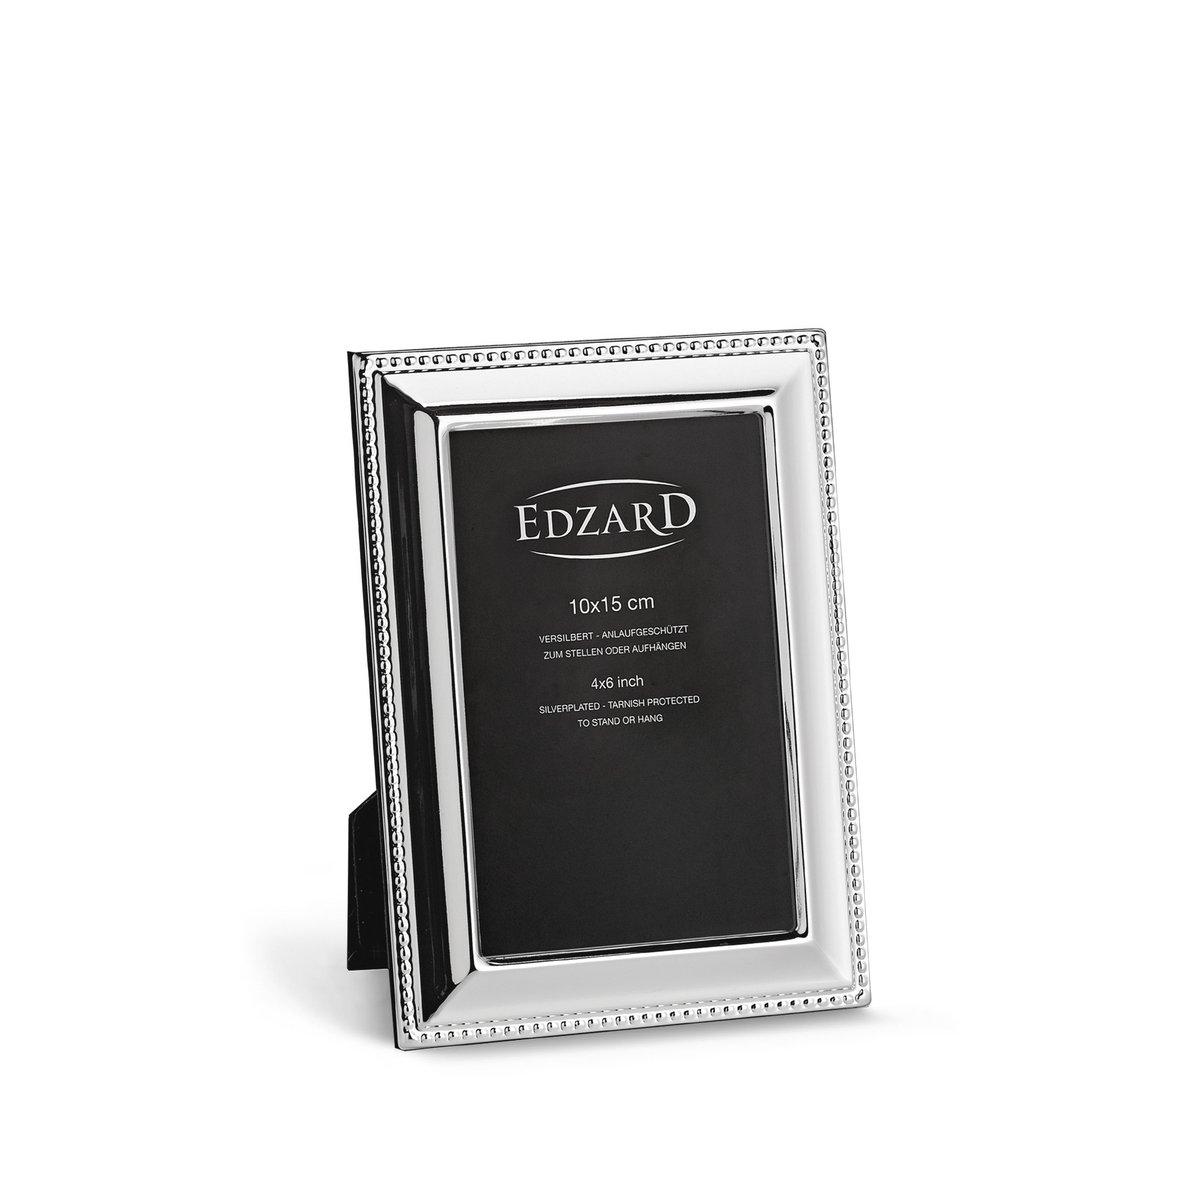 EDZARD Fotorahmen Perla für Foto 10 x 15 cm, edel versilbert, anlaufgeschützt, mit 2 Aufhängern - HomeDesign Knaus